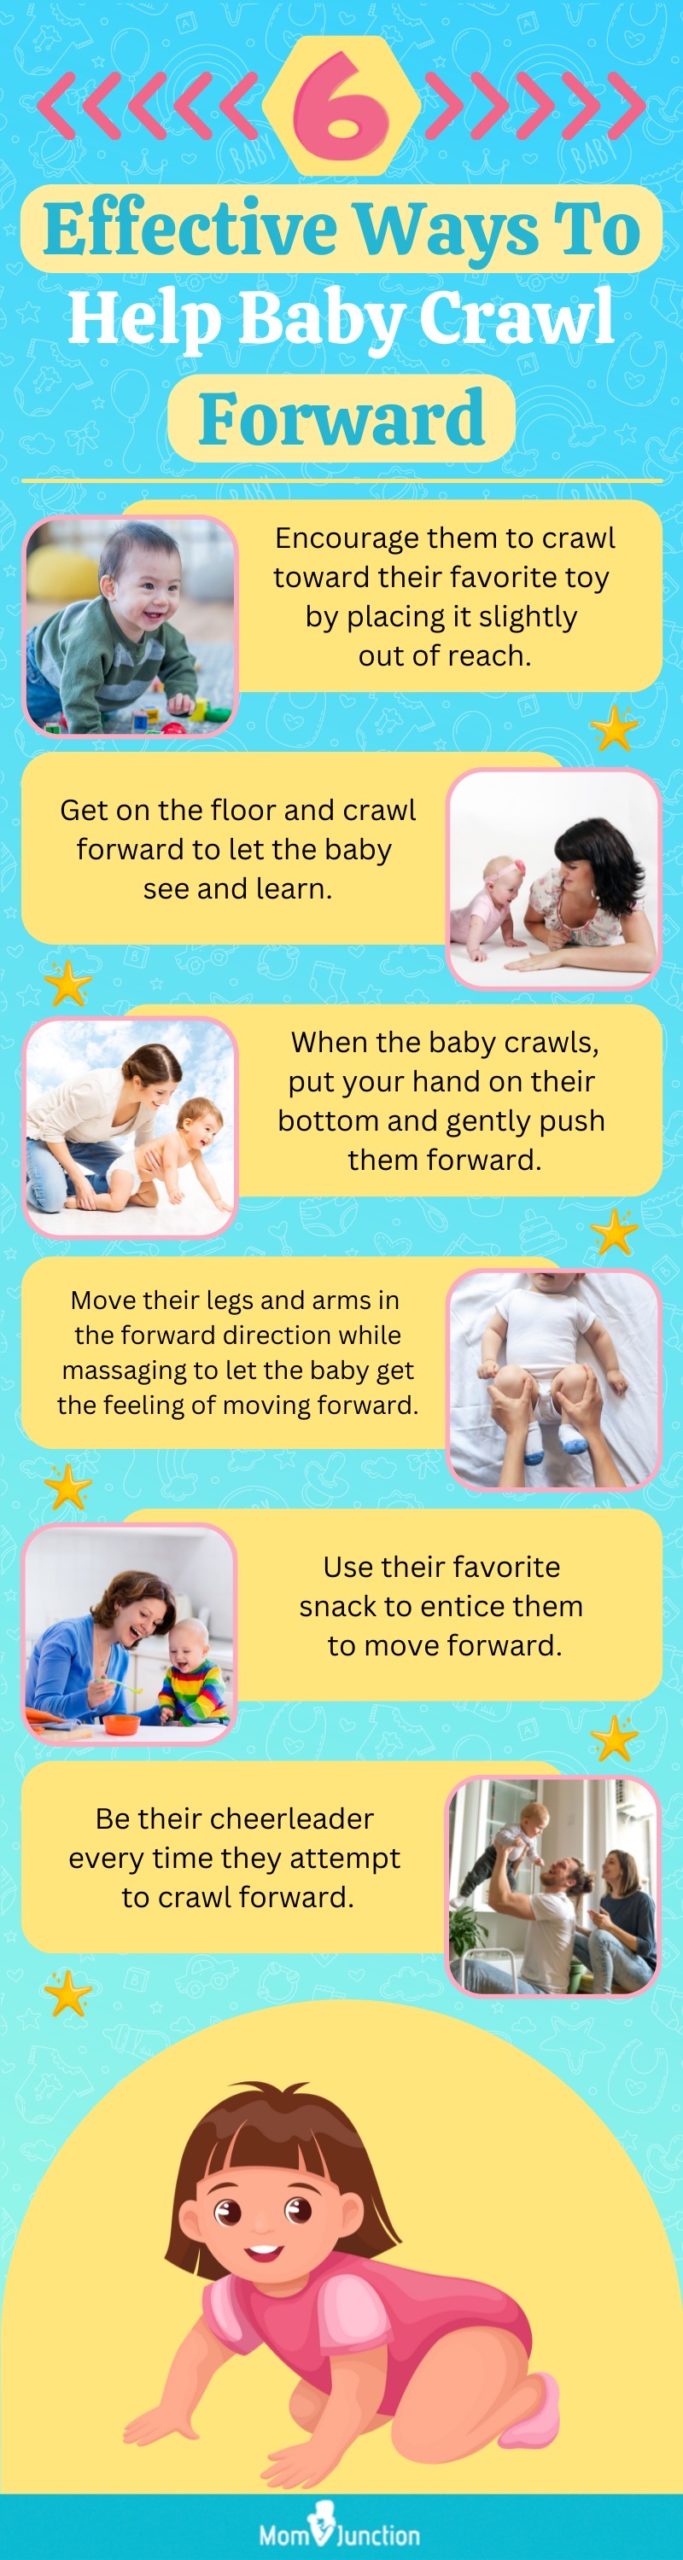 如何帮助宝宝向前爬行(信息图)